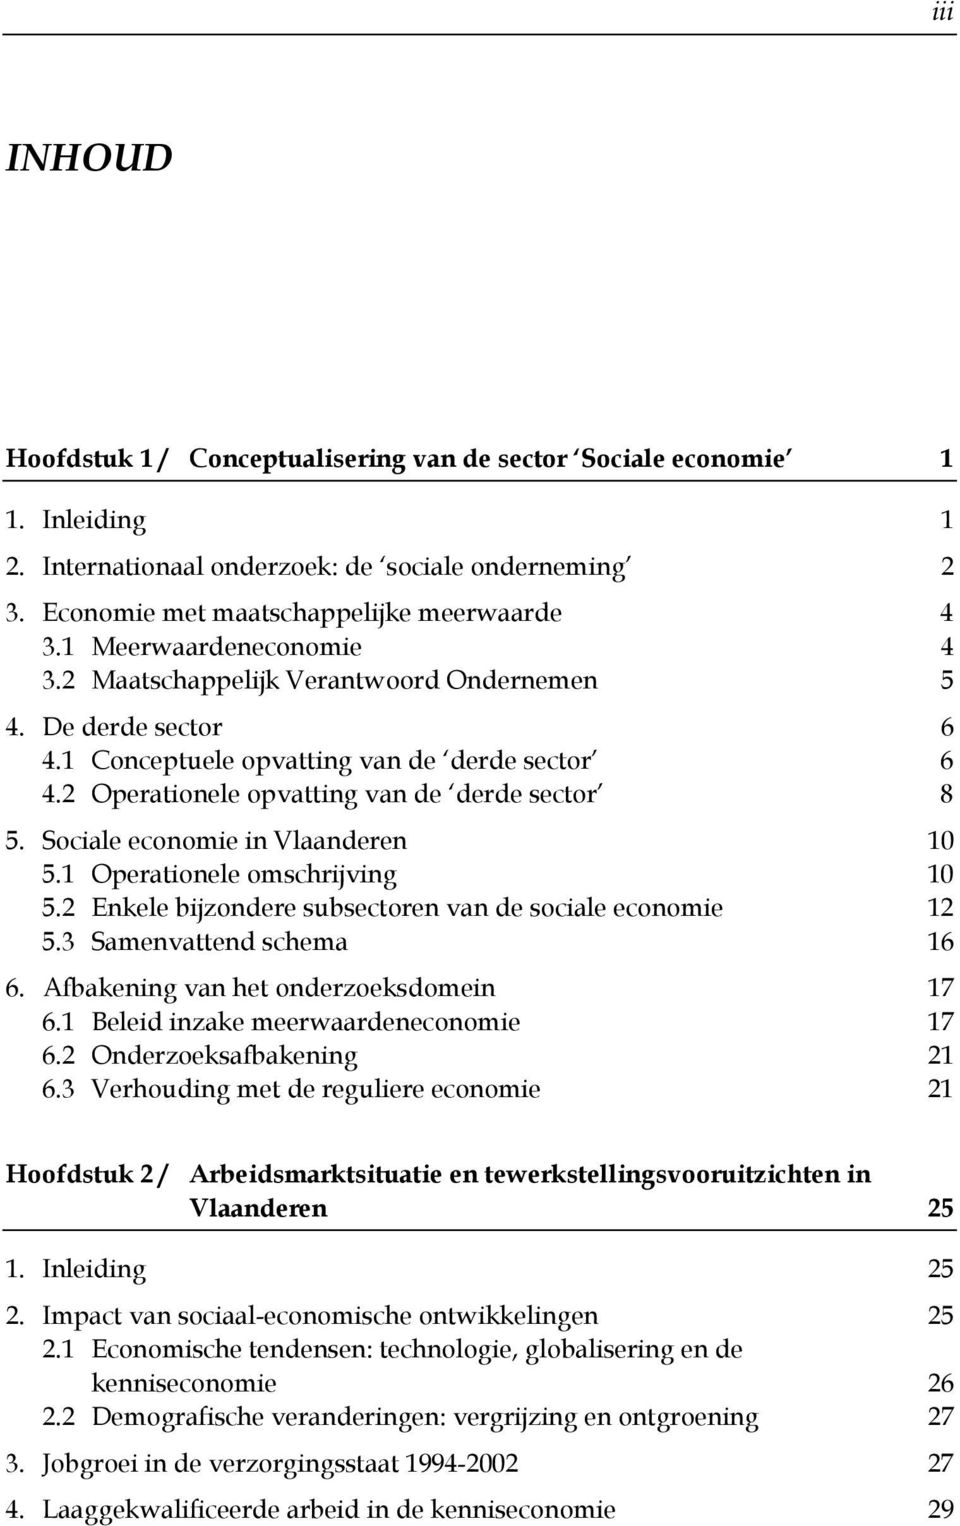 Sociale economie in Vlaanderen 10 5.1 Operationele omschrijving 10 5.2 Enkele bijzondere subsectoren van de sociale economie 12 5.3 Samenvattend schema 16 6. Afbakening van het onderzoeksdomein 17 6.